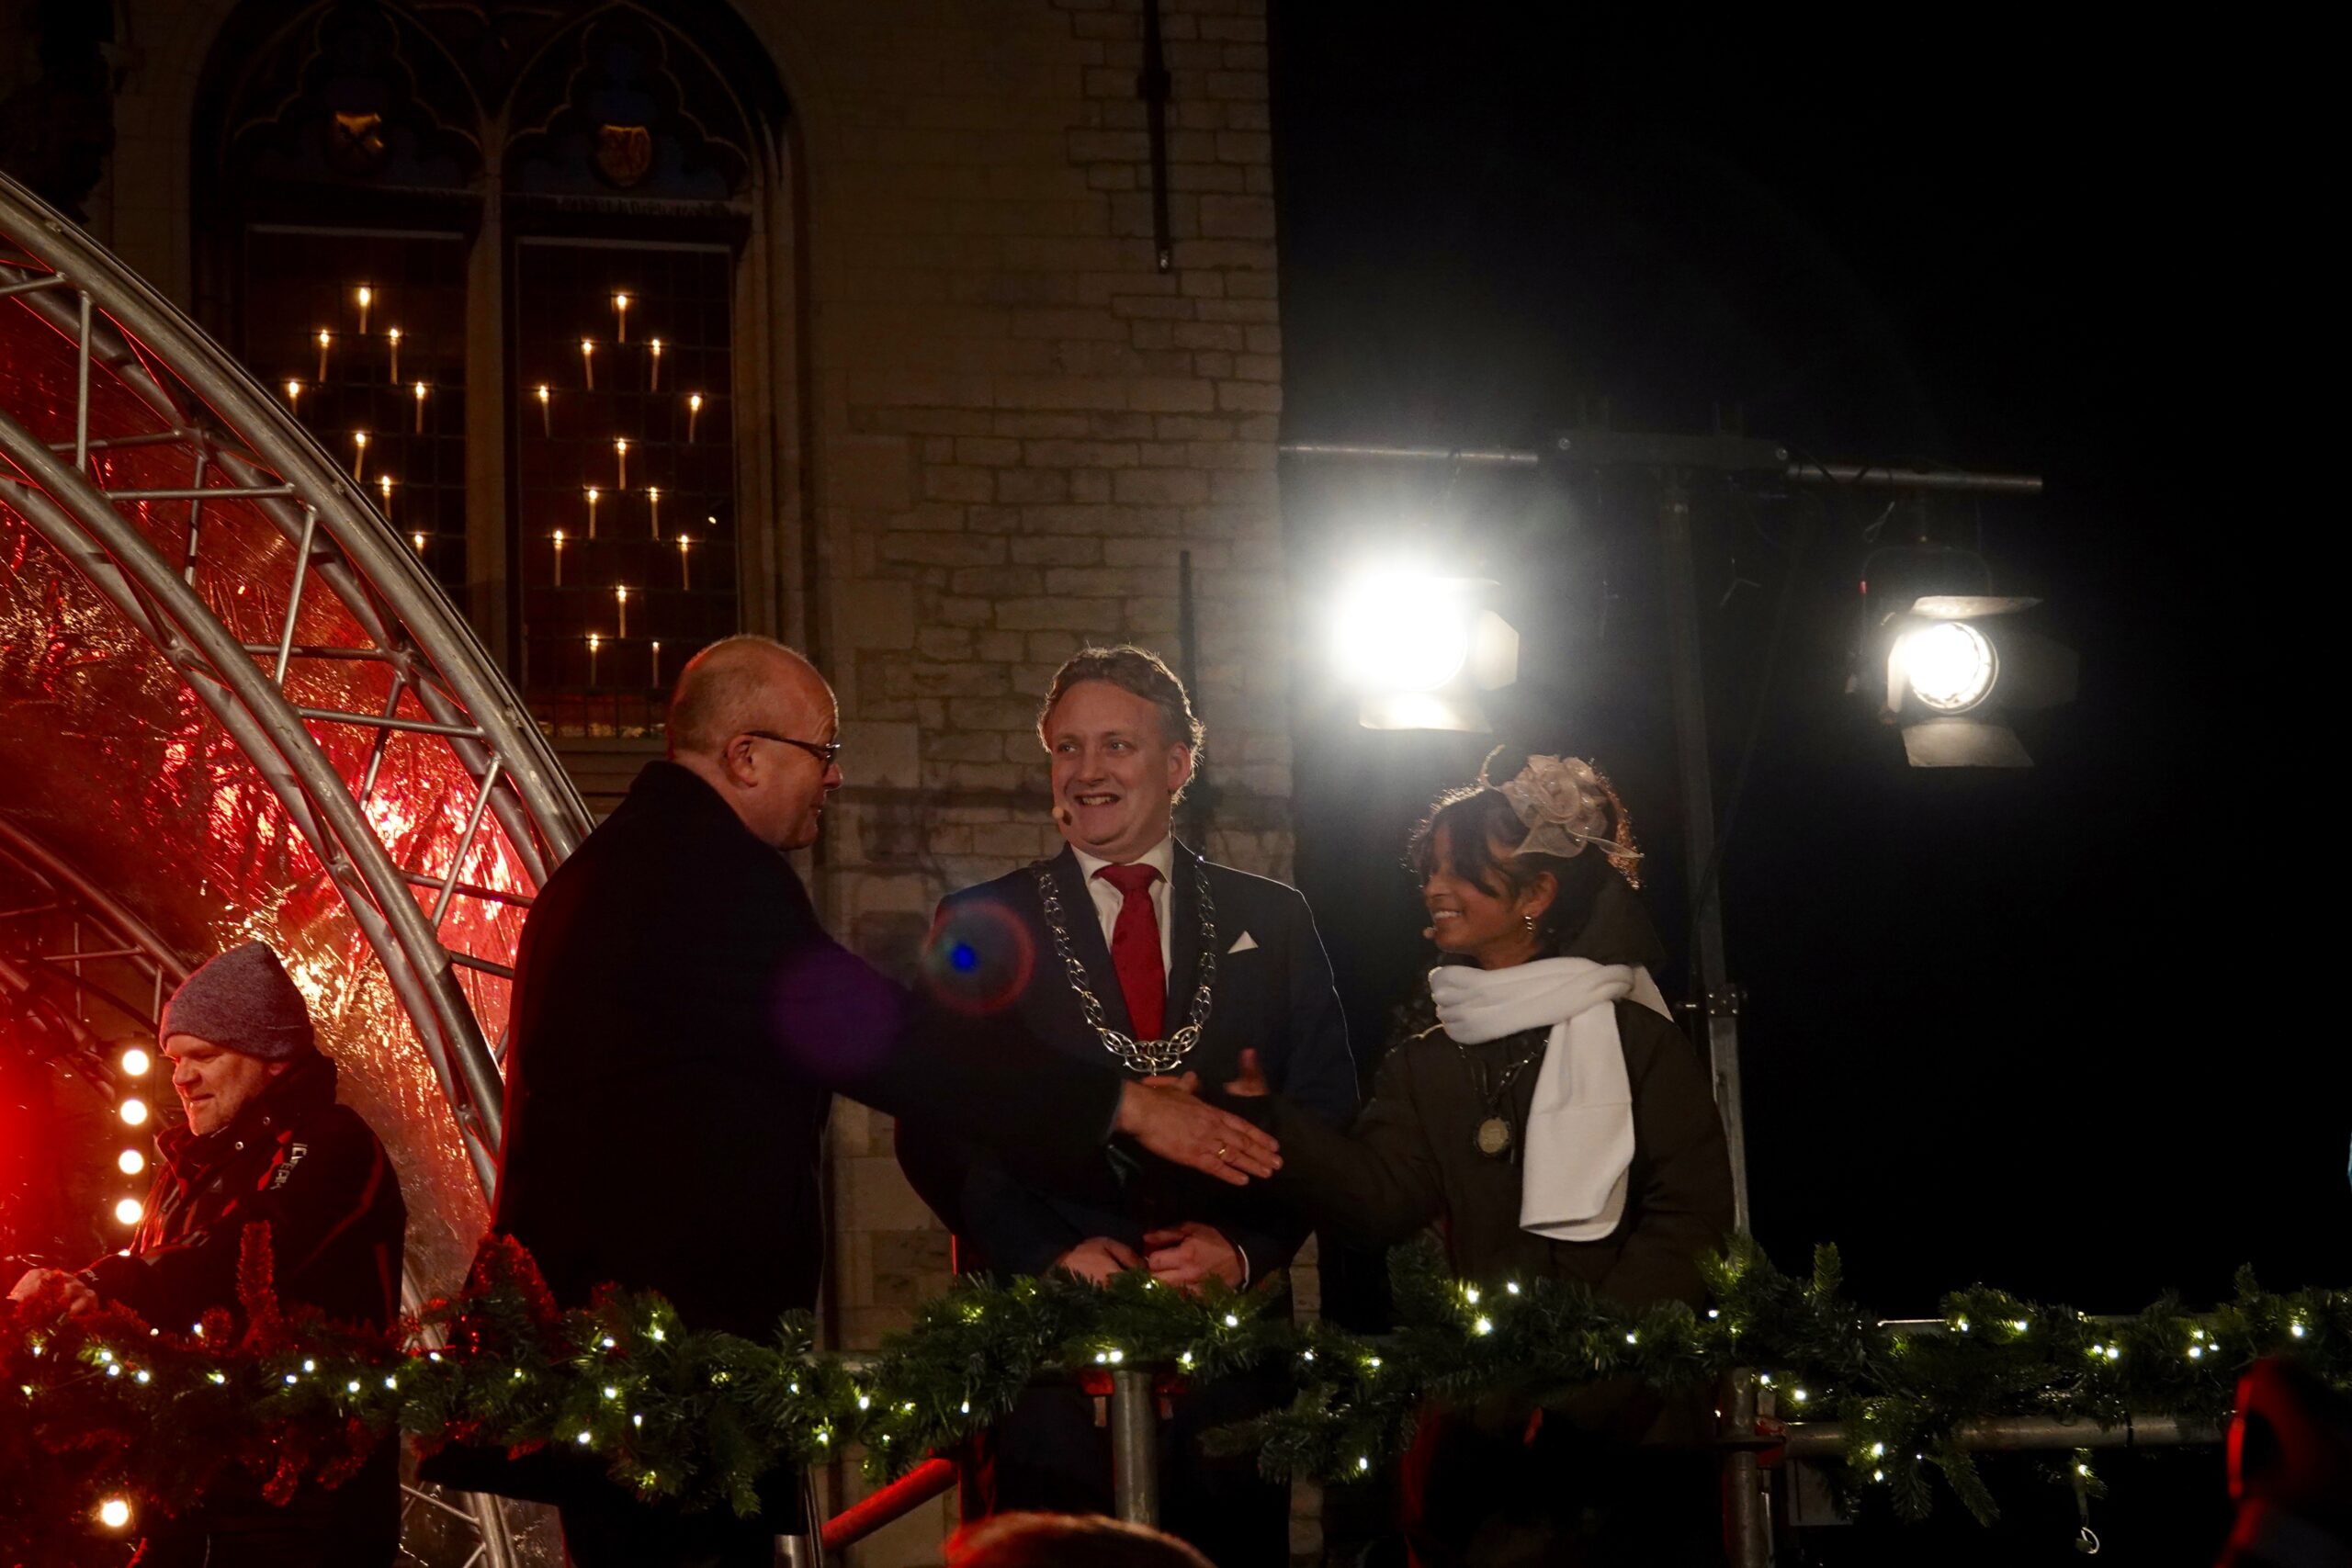 Burgemeesters drukken op de knop en ontsteken daarmee de lichtjes in de boom -Fotograaf Hans Colijn